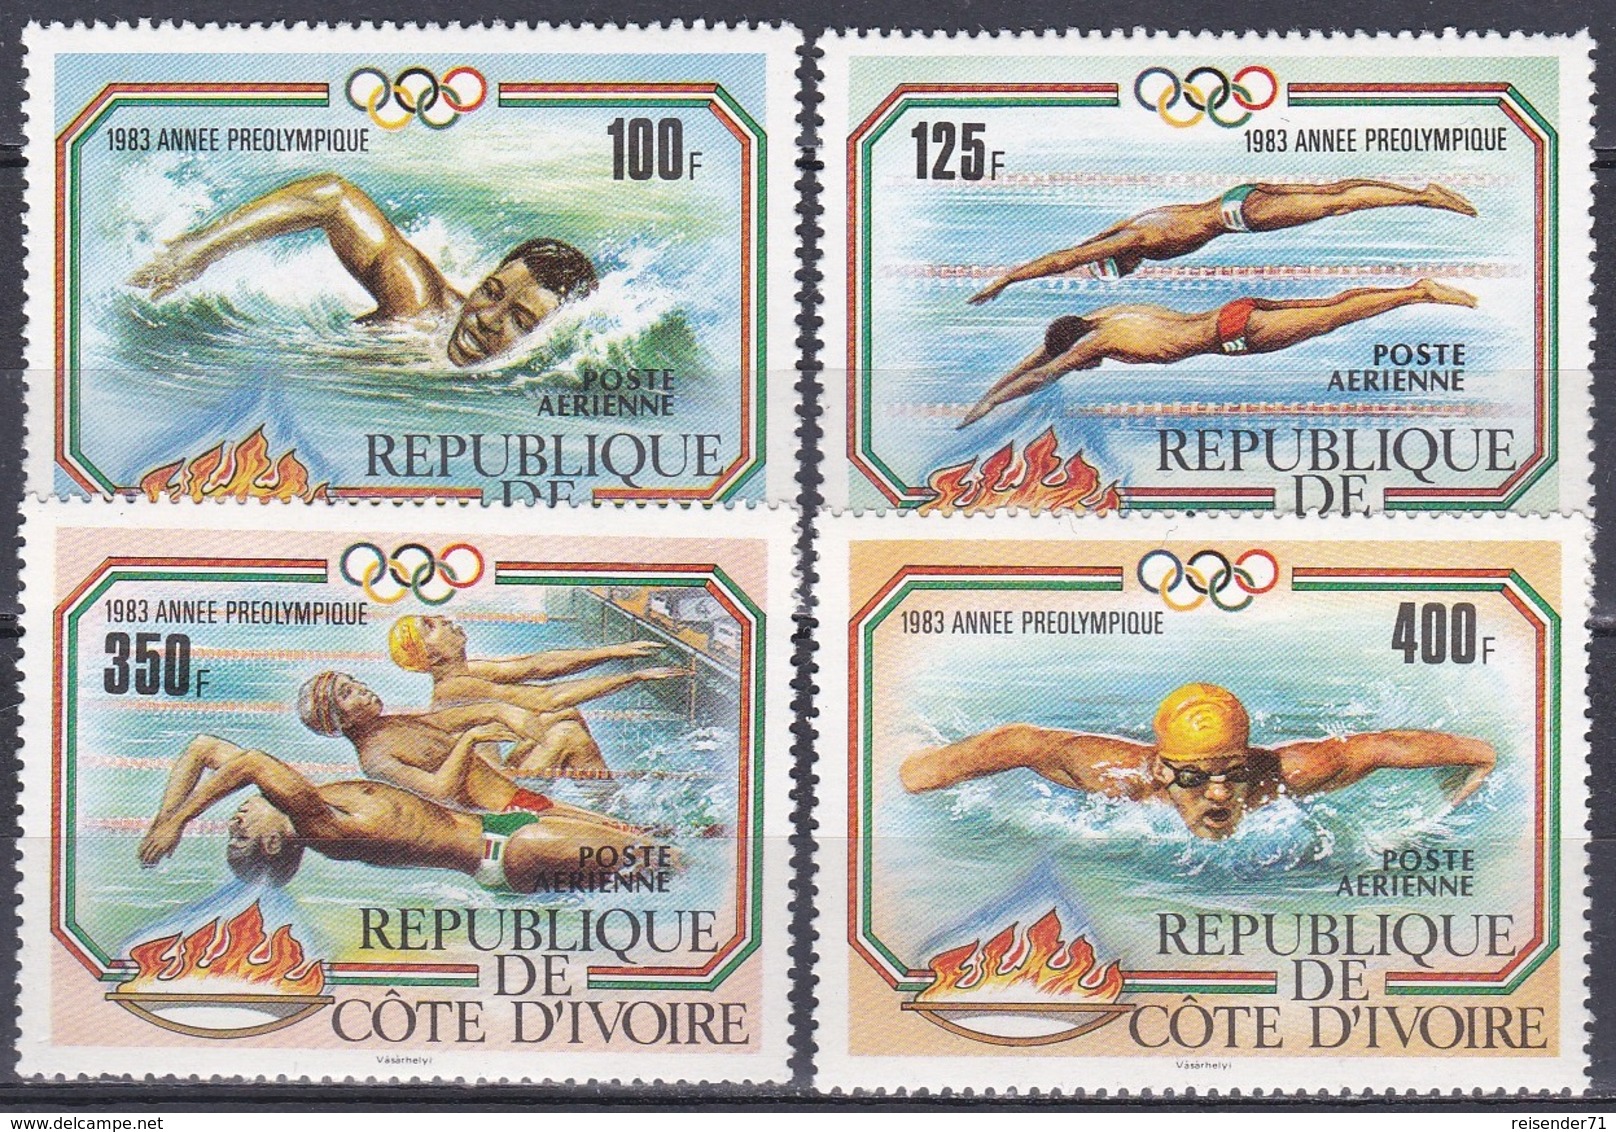 Elfenbeinküste Ivory Coast Cote D'Ivoire 1983 Sport Spiele Olympia Olympics Wassersport Schwimmen, Mi. 787-0 ** - Côte D'Ivoire (1960-...)